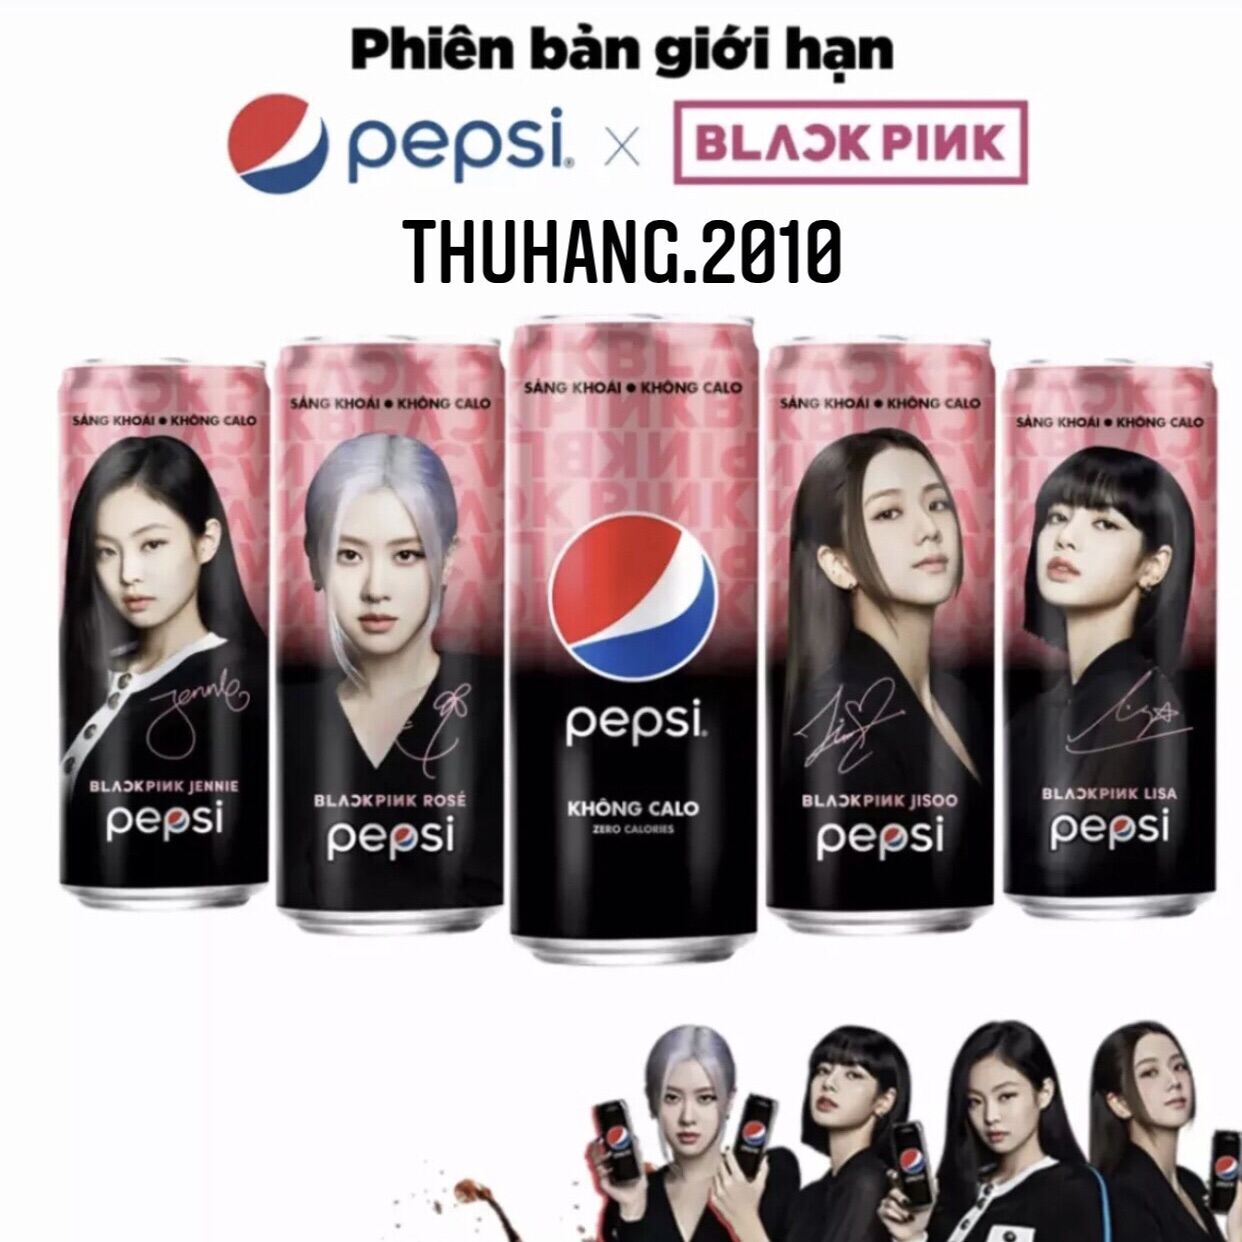 Pepsi Blackpink: Xem chiếc ảnh của Pepsi kết hợp với Blackpink để thấy sự hòa quyện hoàn hảo giữa âm nhạc và thức uống. Hãy xem chúng làm thế nào để tạo nên một sản phẩm đẹp mắt và hấp dẫn.